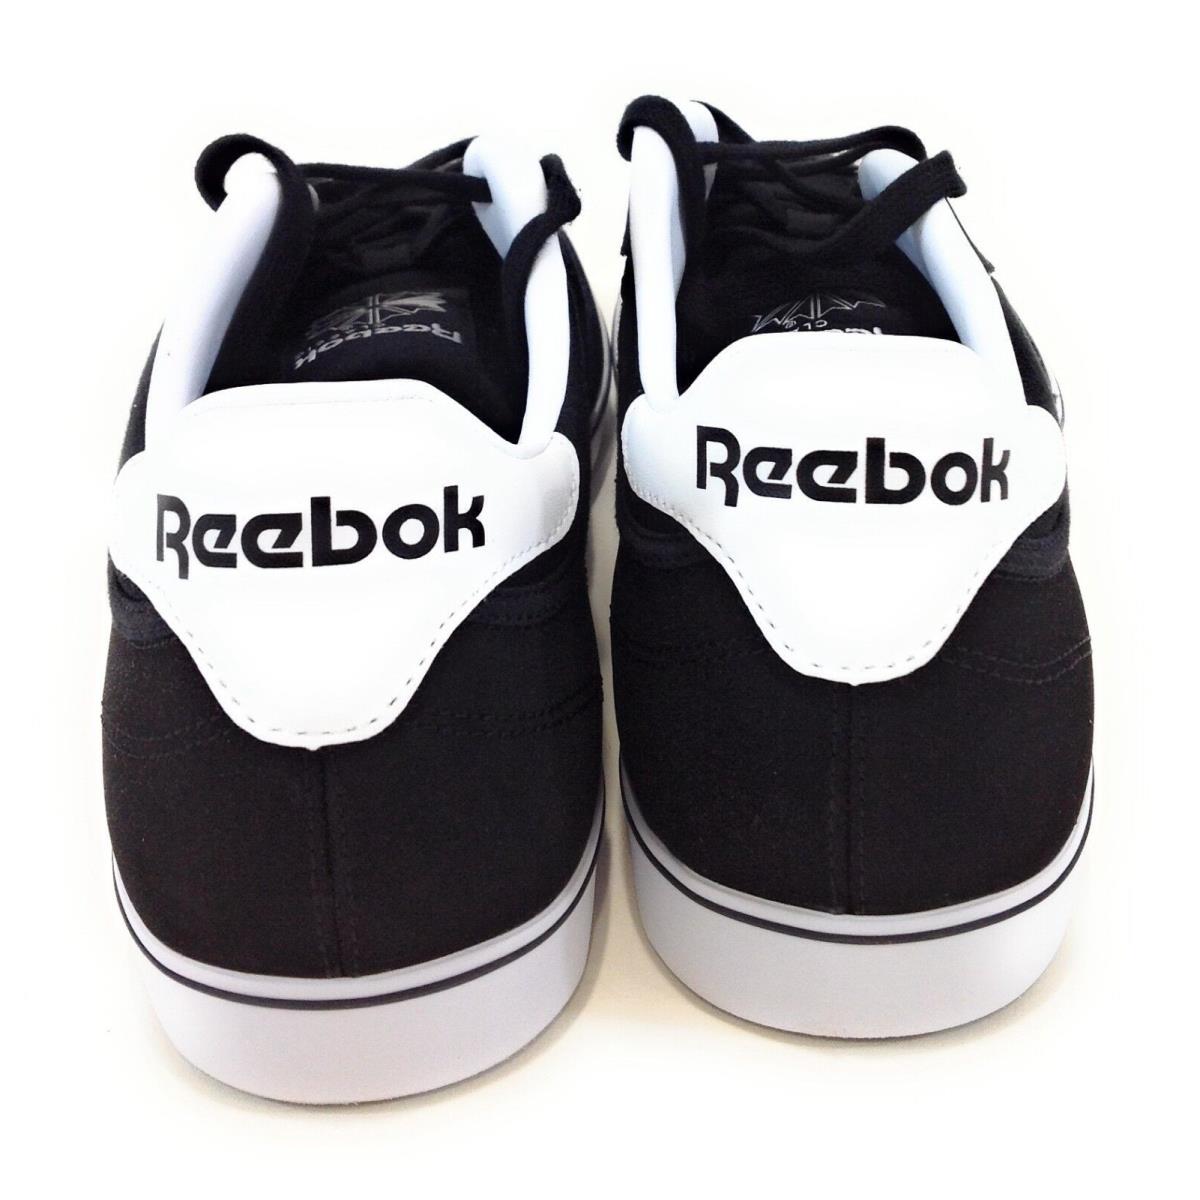 Reebok shoes Club - Black/White 2